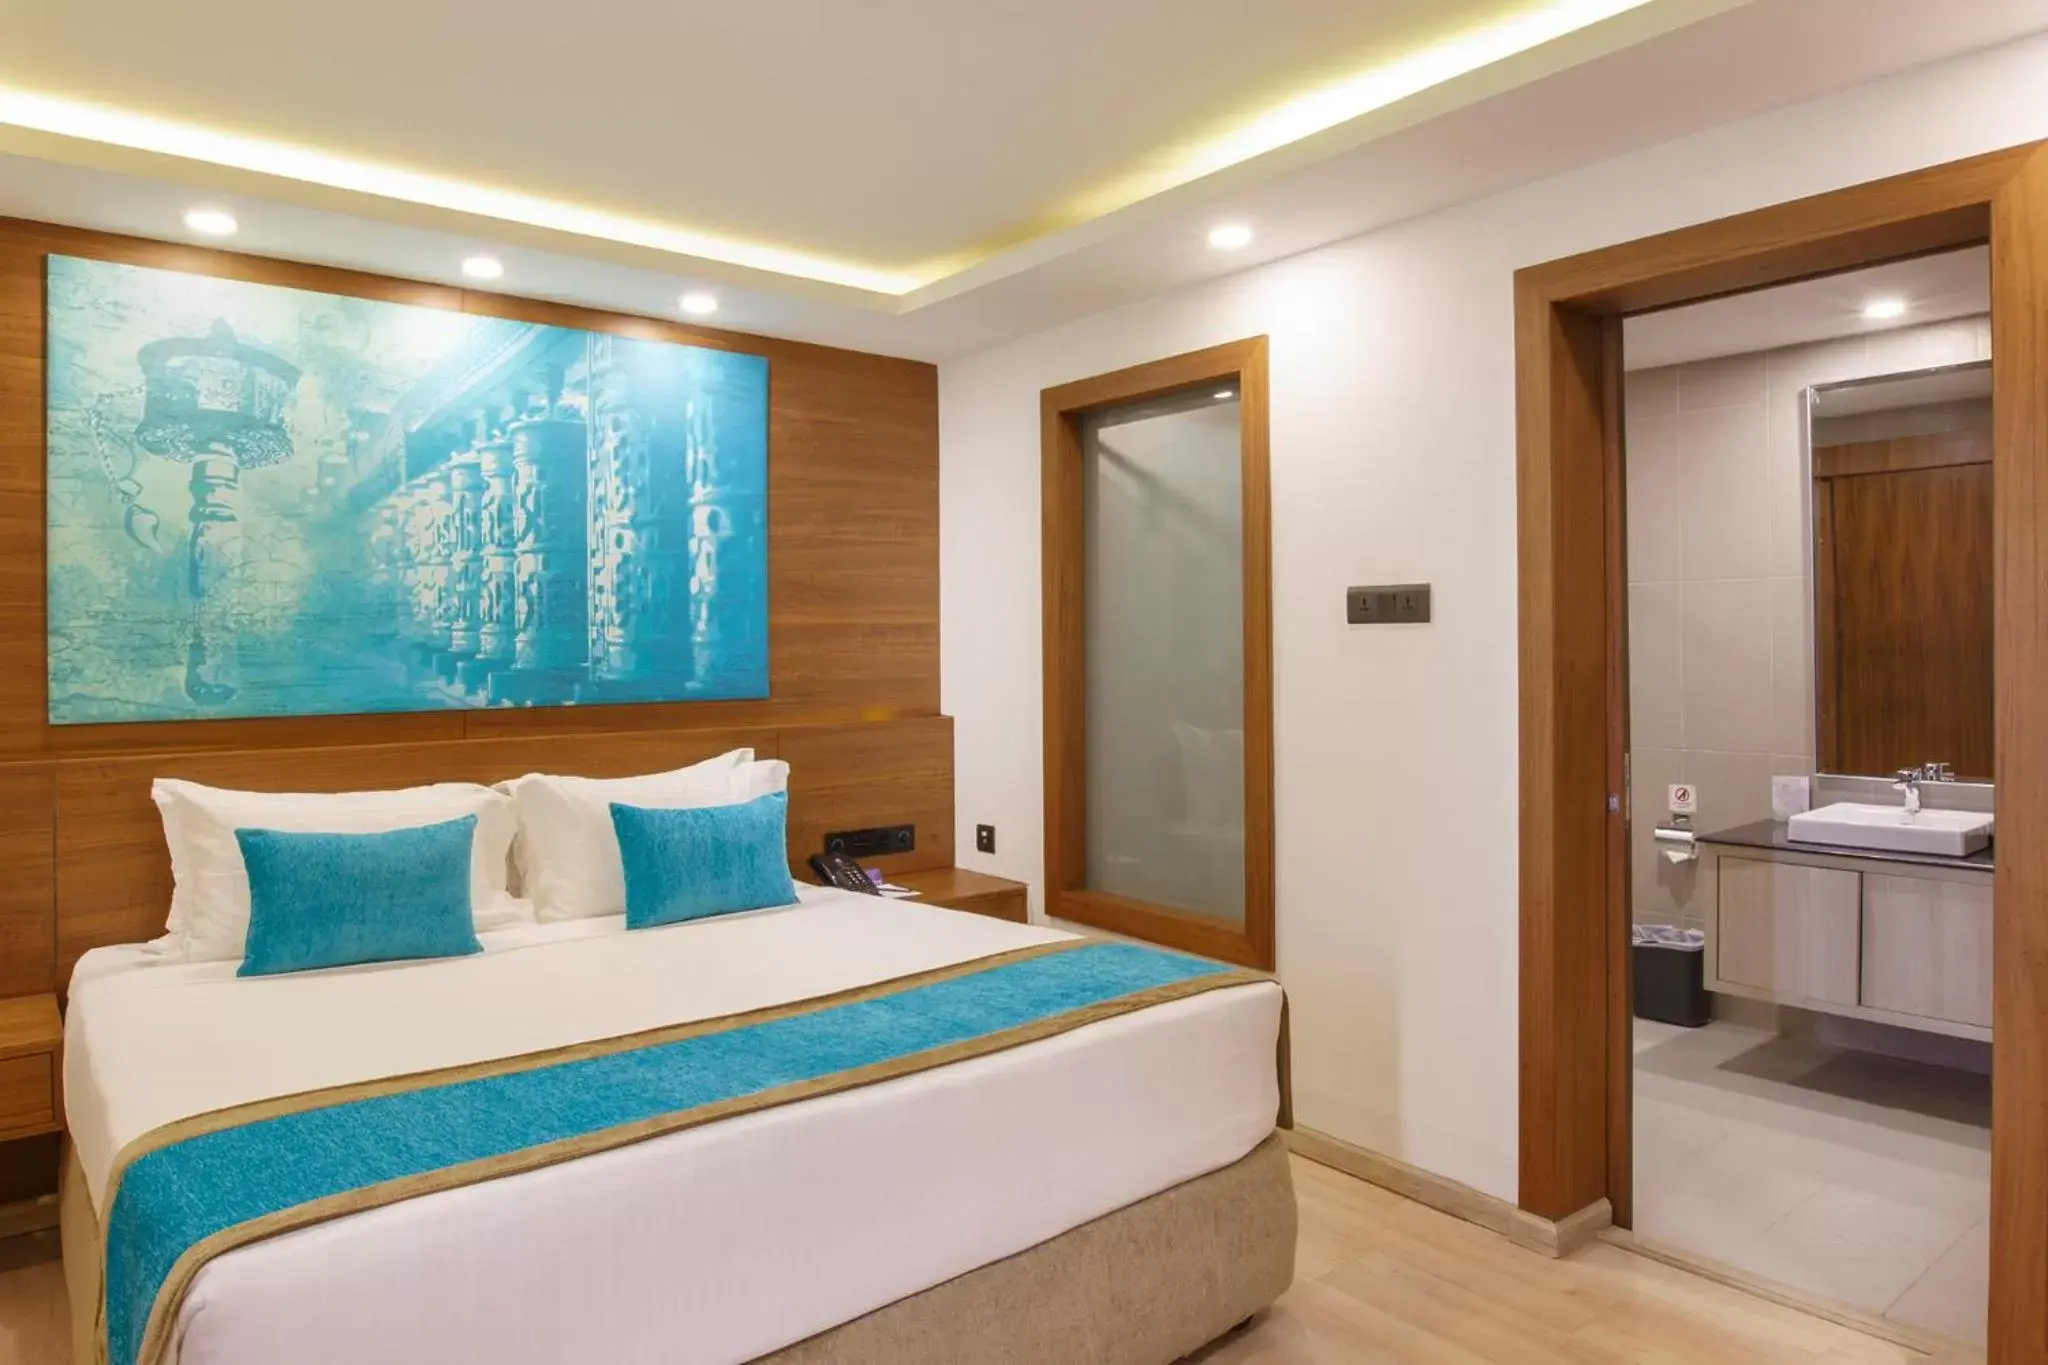 Bathroom, Bed in Royal Singi Hotel